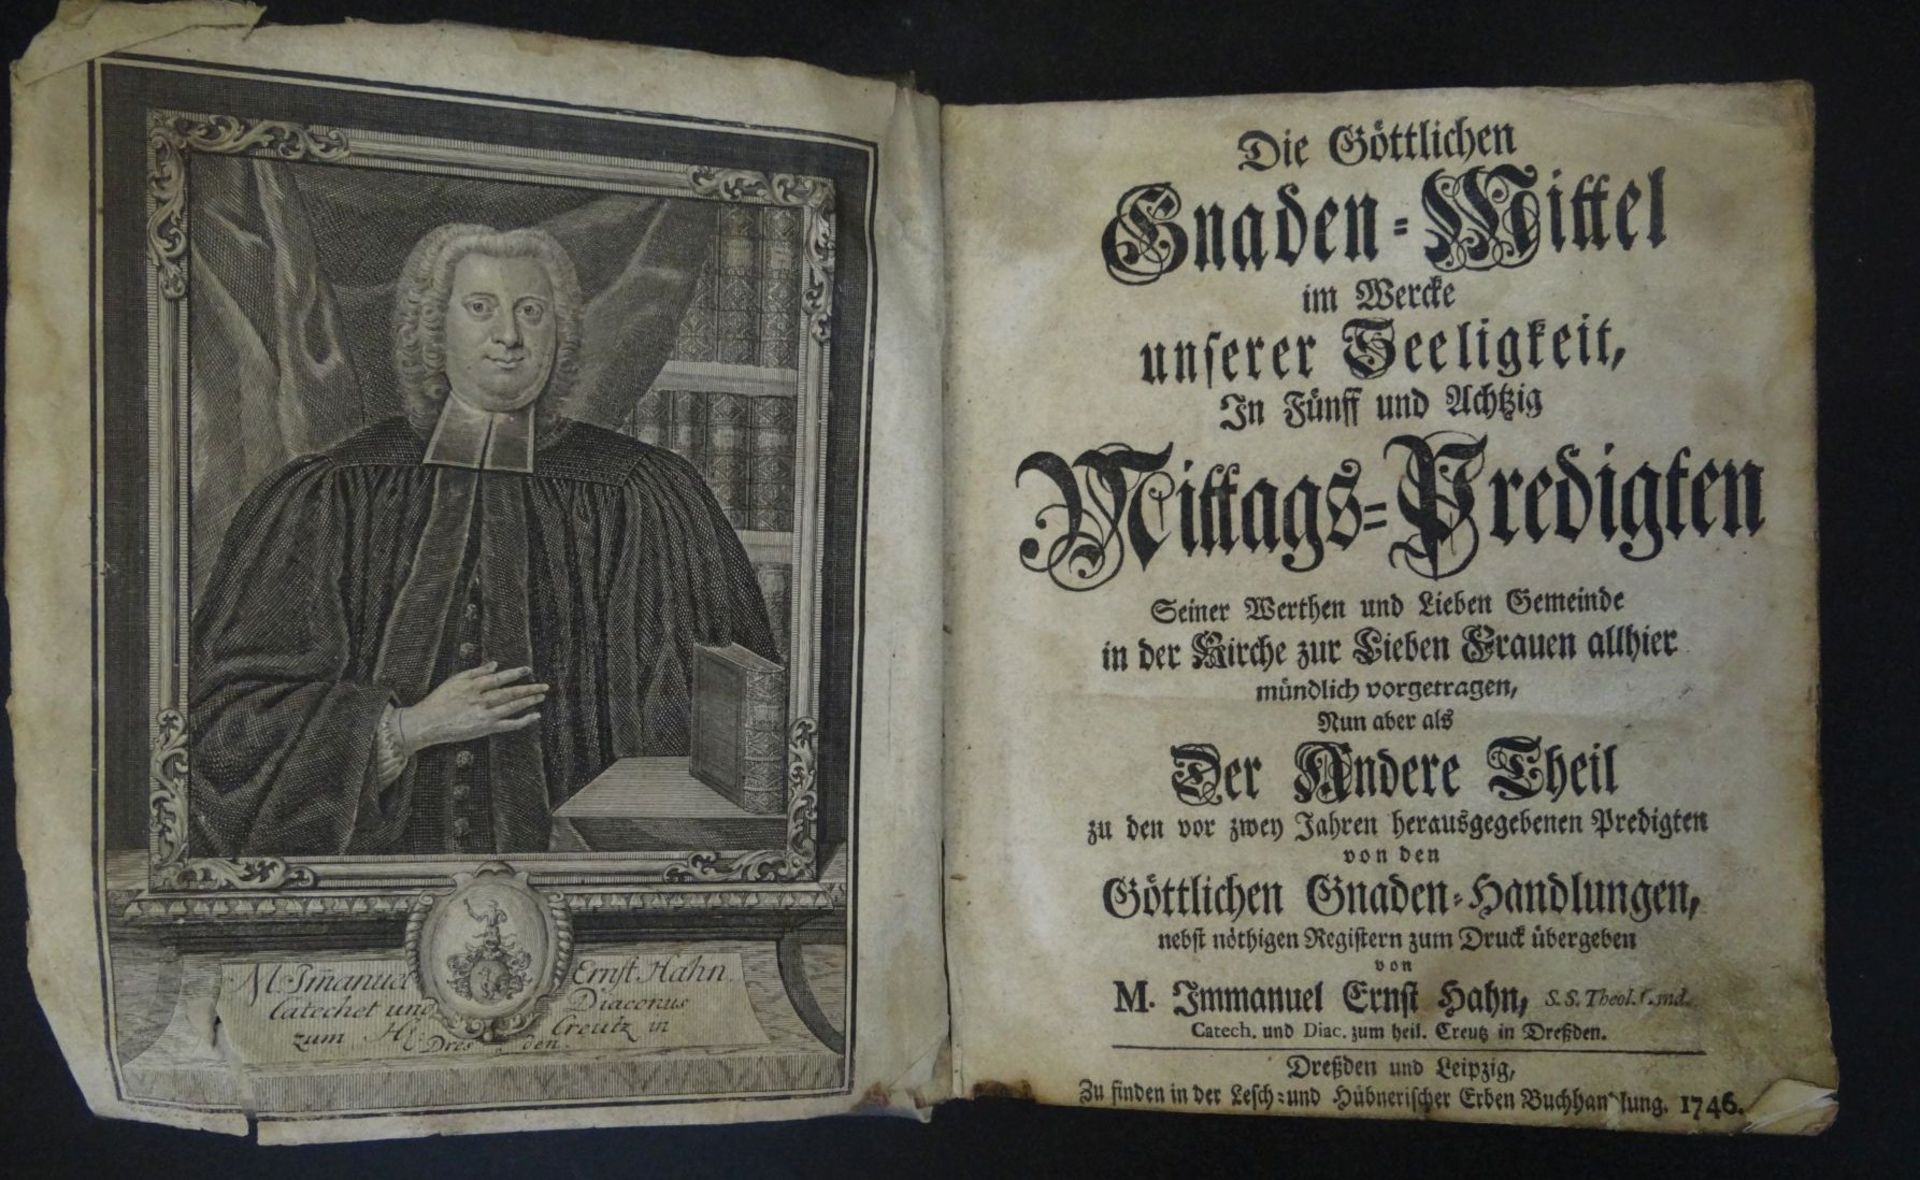 "Die göttlichen Gnaden-Mittel... 85 Mittags-Predigten" 1746, Ledereinband der Zeit, Gebrauchsspuren,